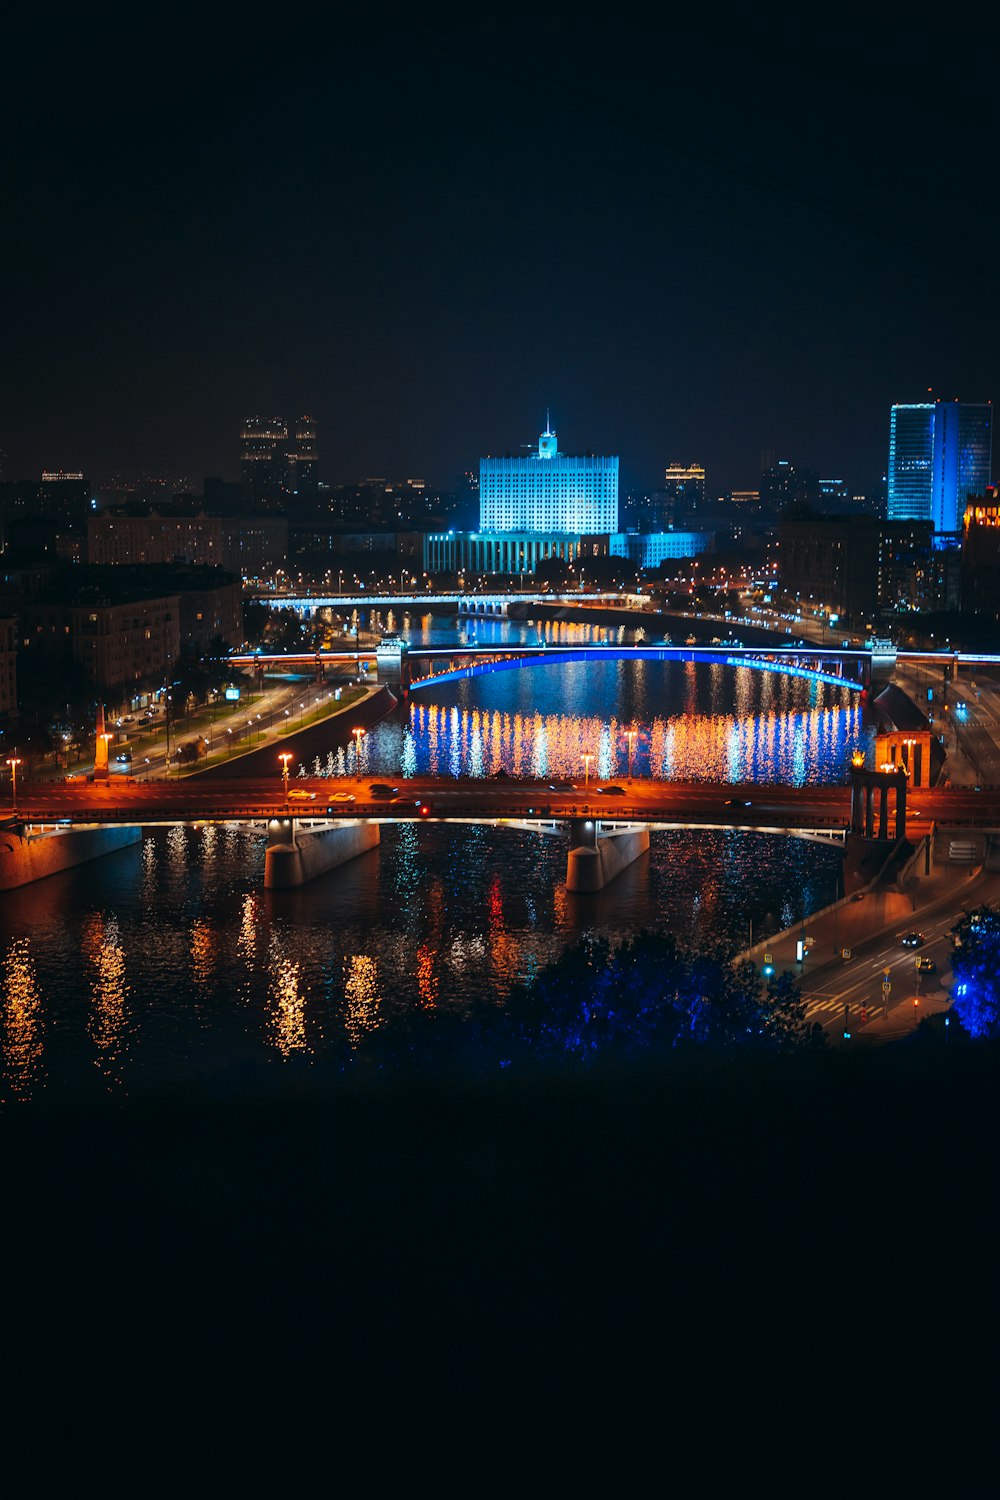 Una vista di una città di notte dall'altra parte del fiume